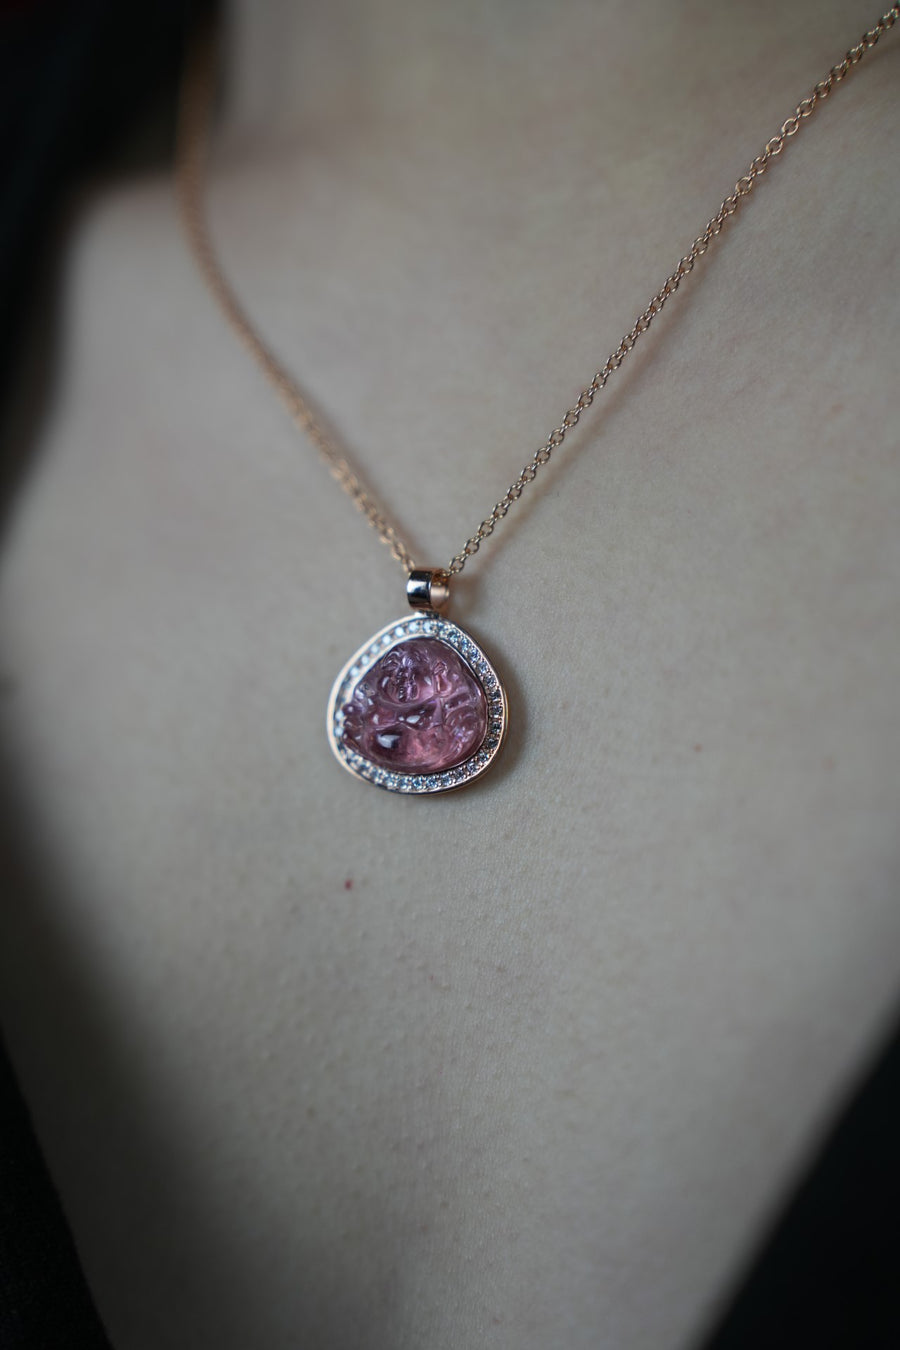 14K Rose Gold Diamond and Pink Tourmaline Buddha Necklace 9.26ct